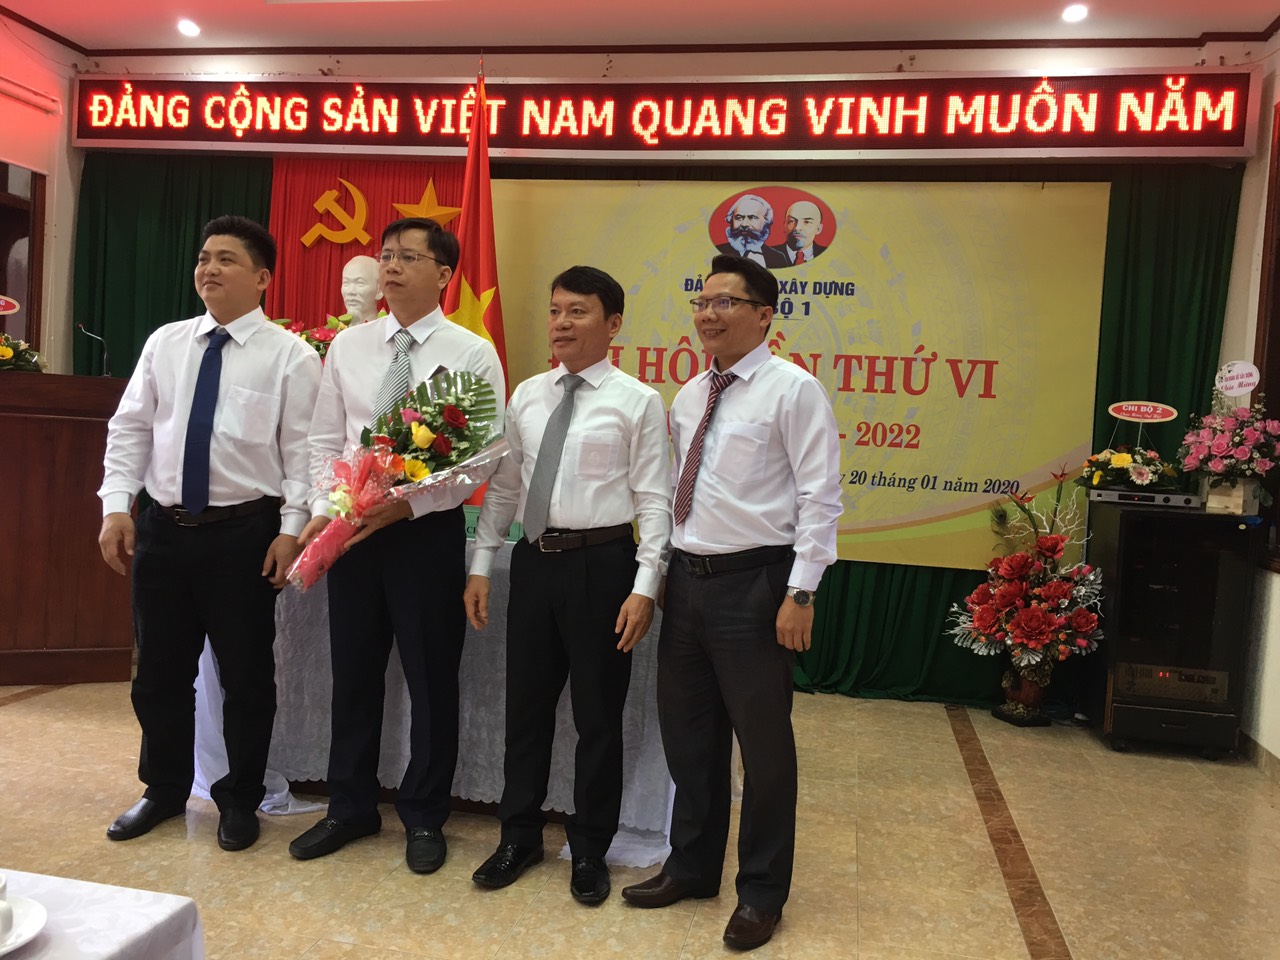 Đ/c Võ Thanh Tín nguyên Bí thư Chi bộ tặng hoa cho Chi ủy nhiệm kỳ 2020-2022